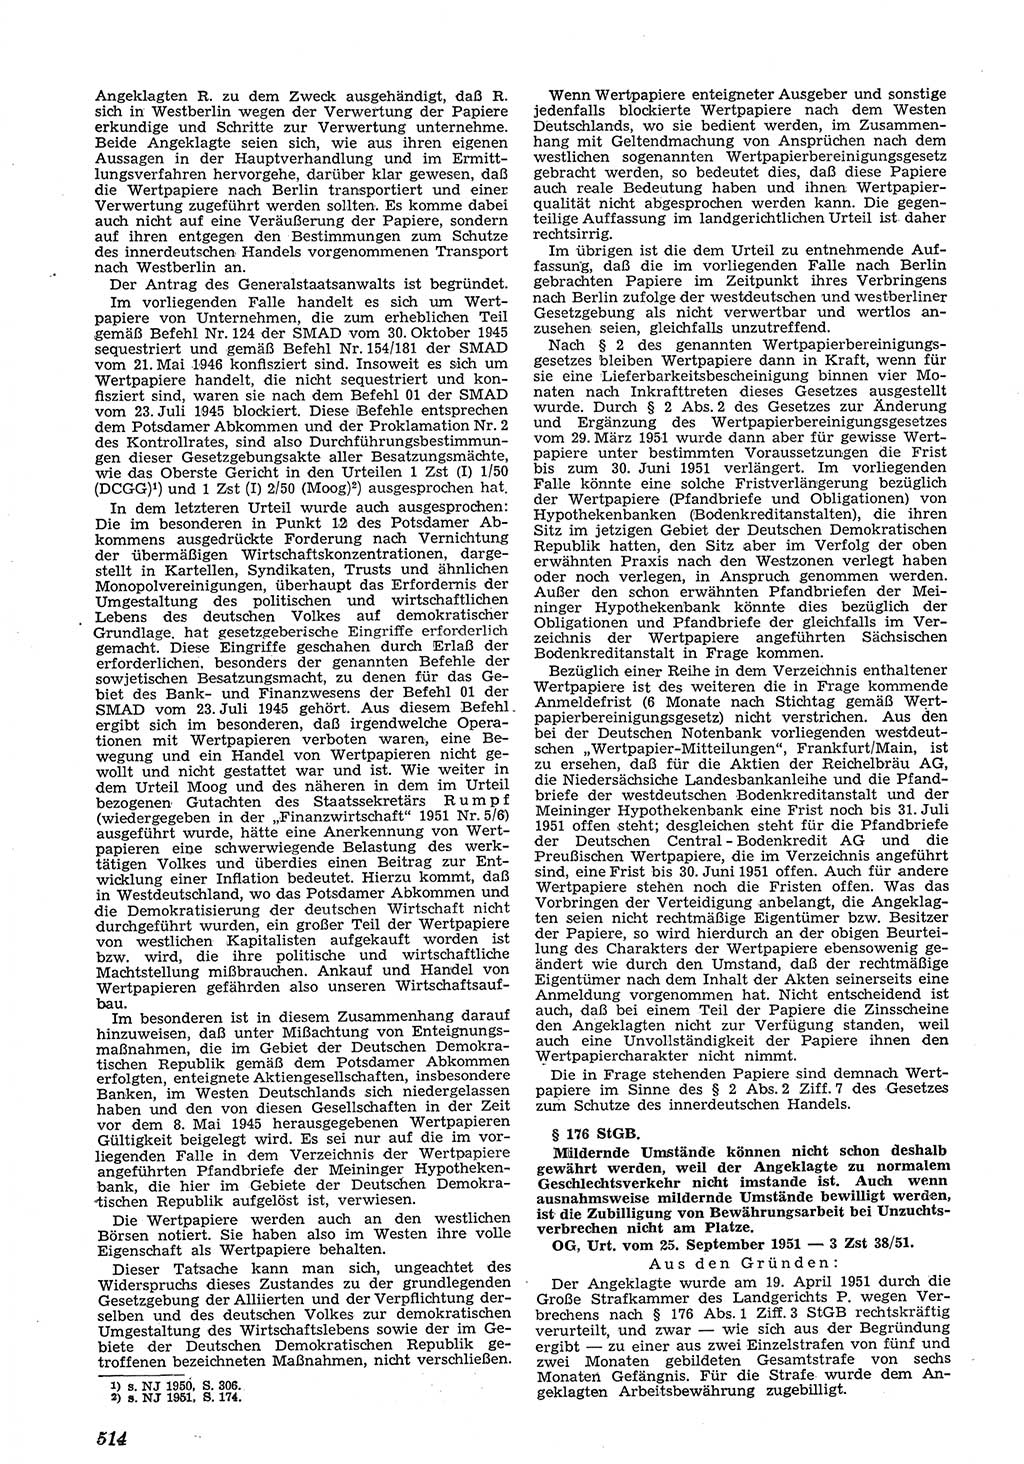 Neue Justiz (NJ), Zeitschrift für Recht und Rechtswissenschaft [Deutsche Demokratische Republik (DDR)], 5. Jahrgang 1951, Seite 514 (NJ DDR 1951, S. 514)